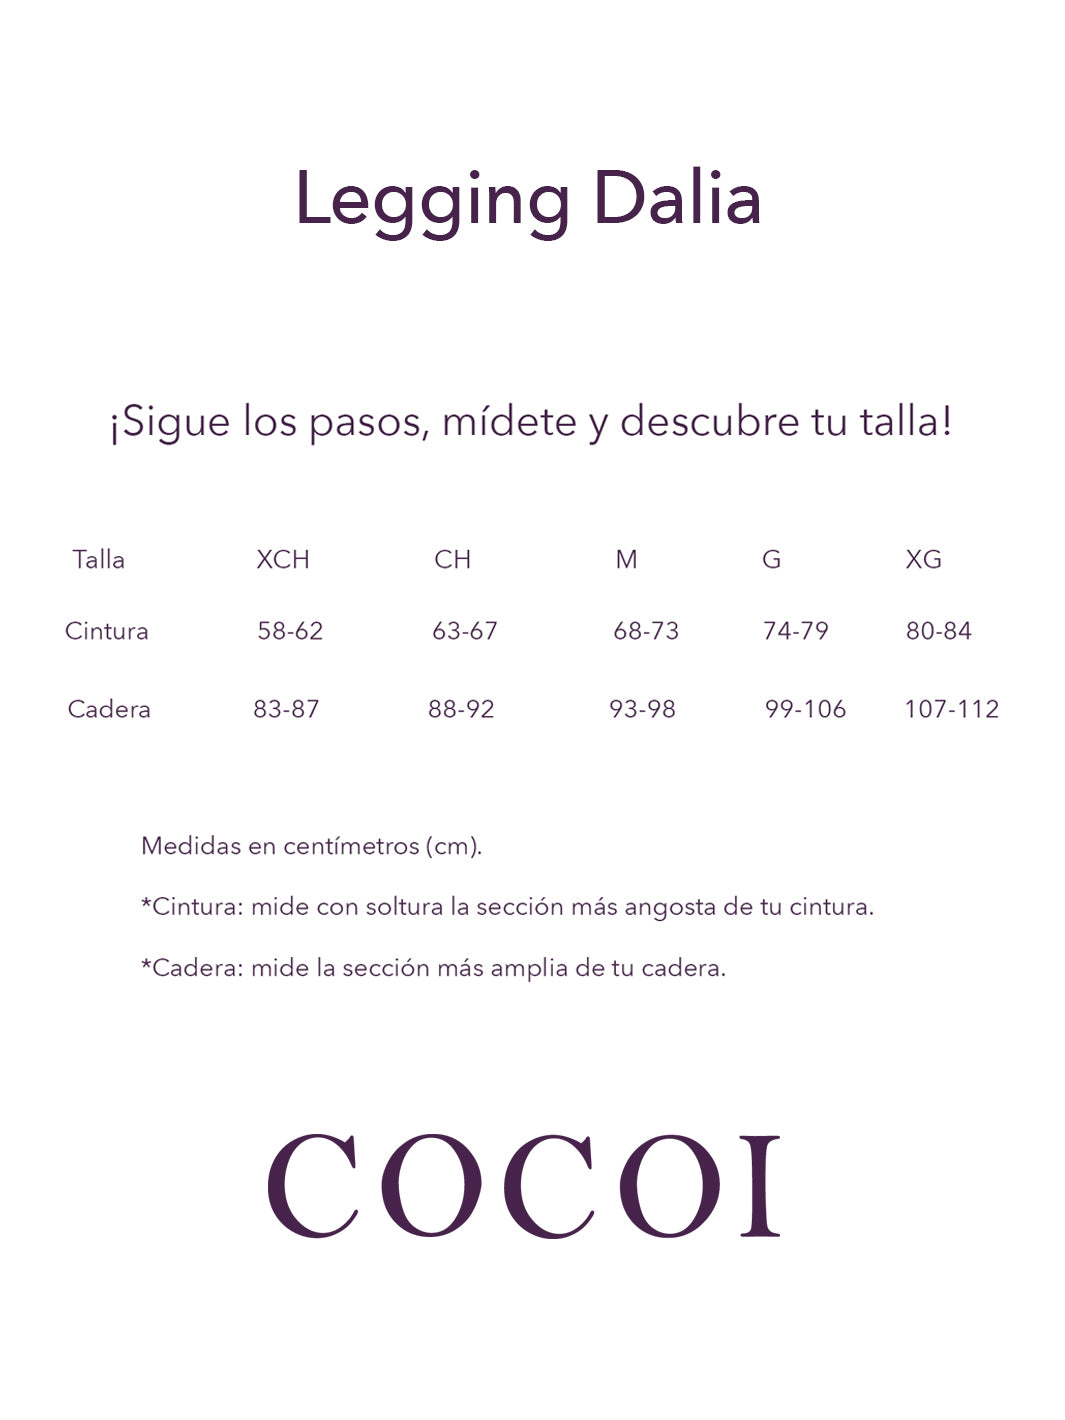 Legging Dalia Mantra Cocoi